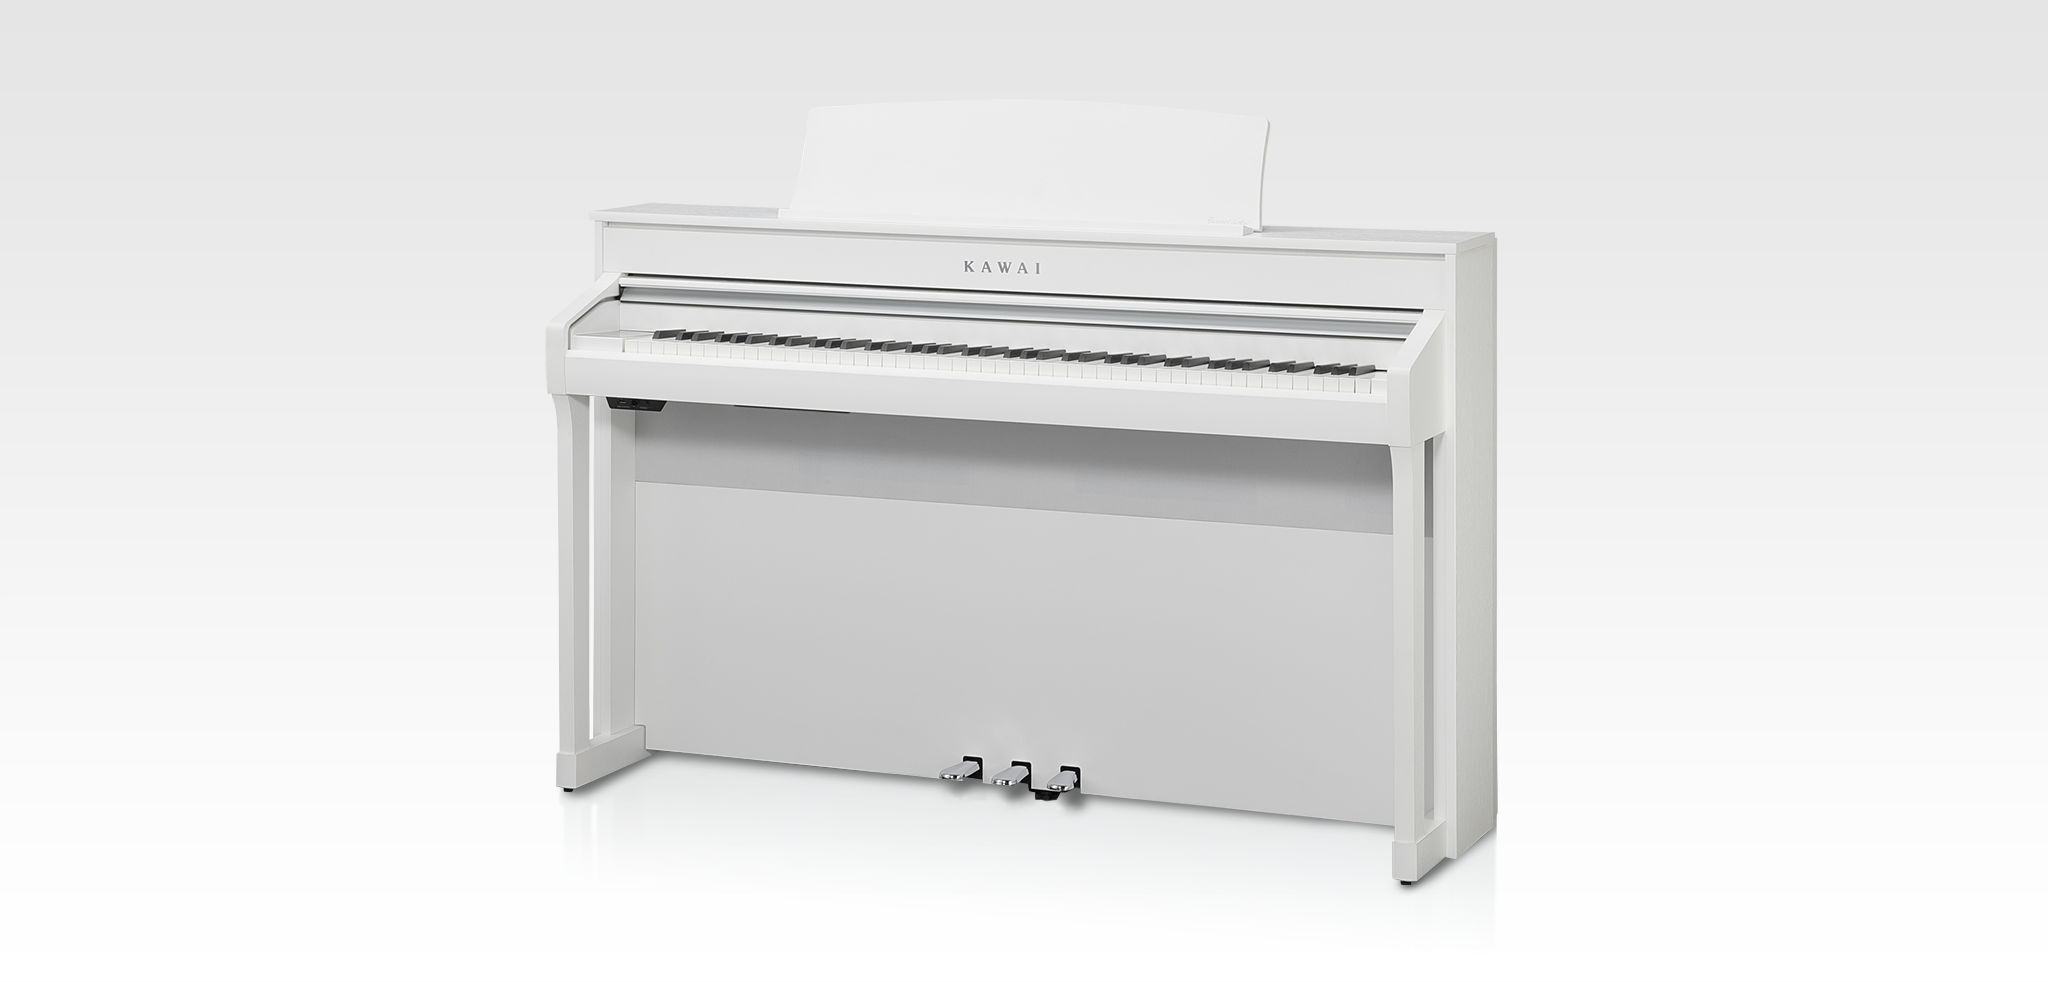 Kawai CA98｜Digital Pianos｜Products｜Kawai Musical Instruments 